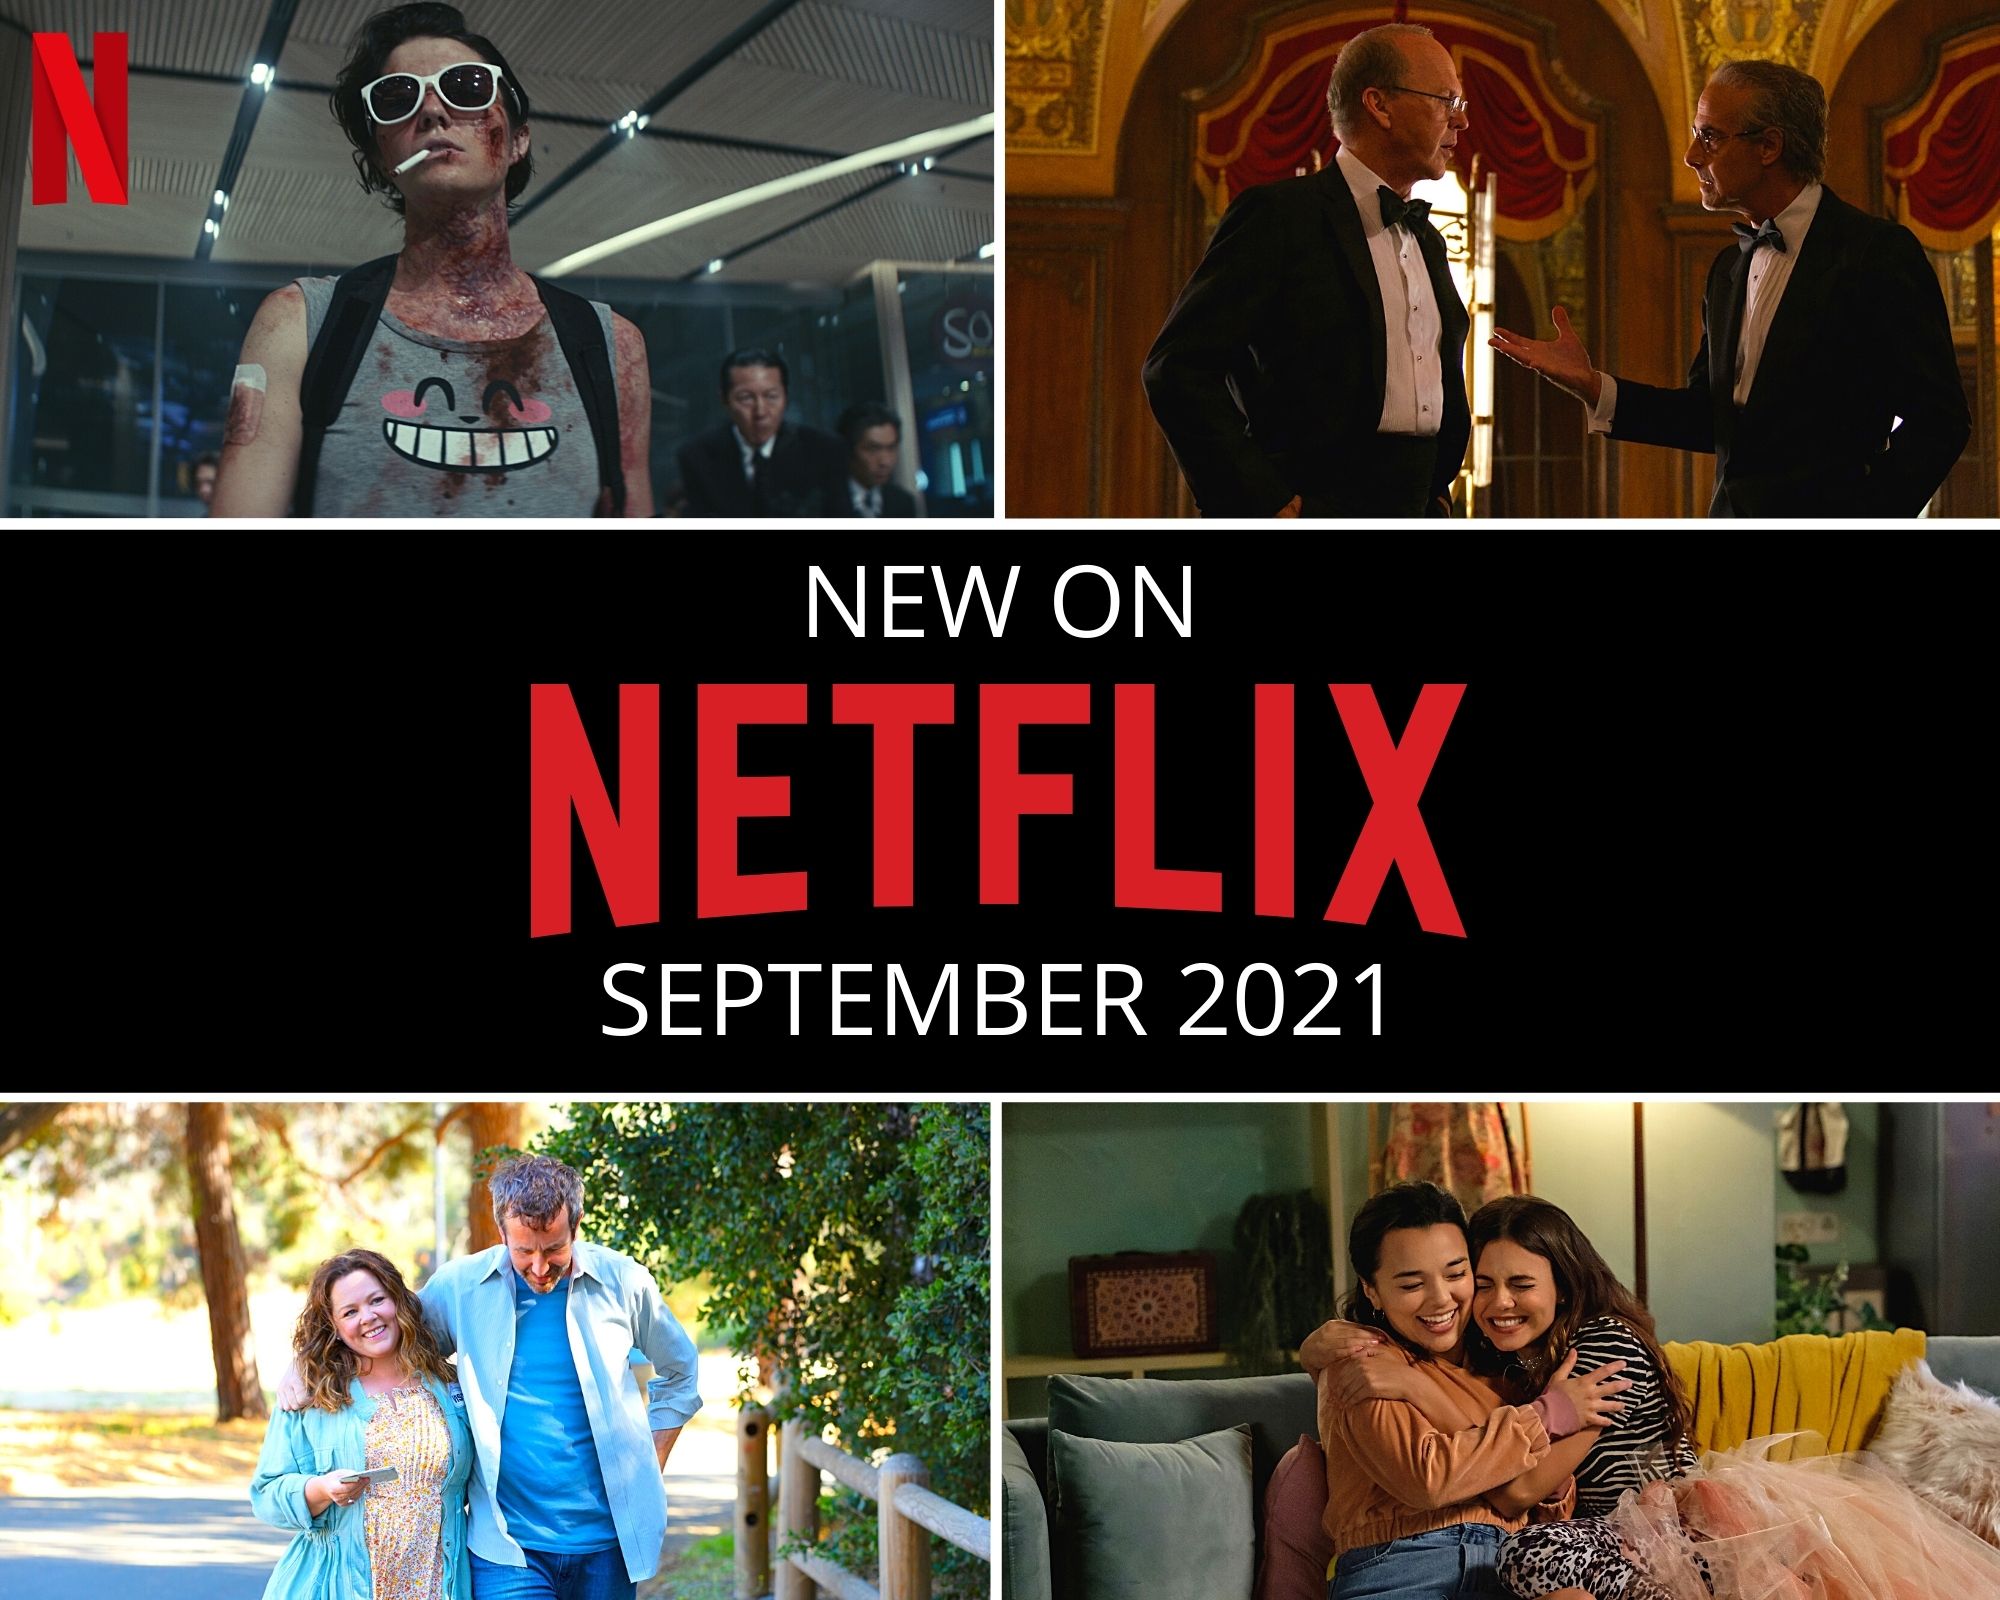 What's New on Netflix September 2021